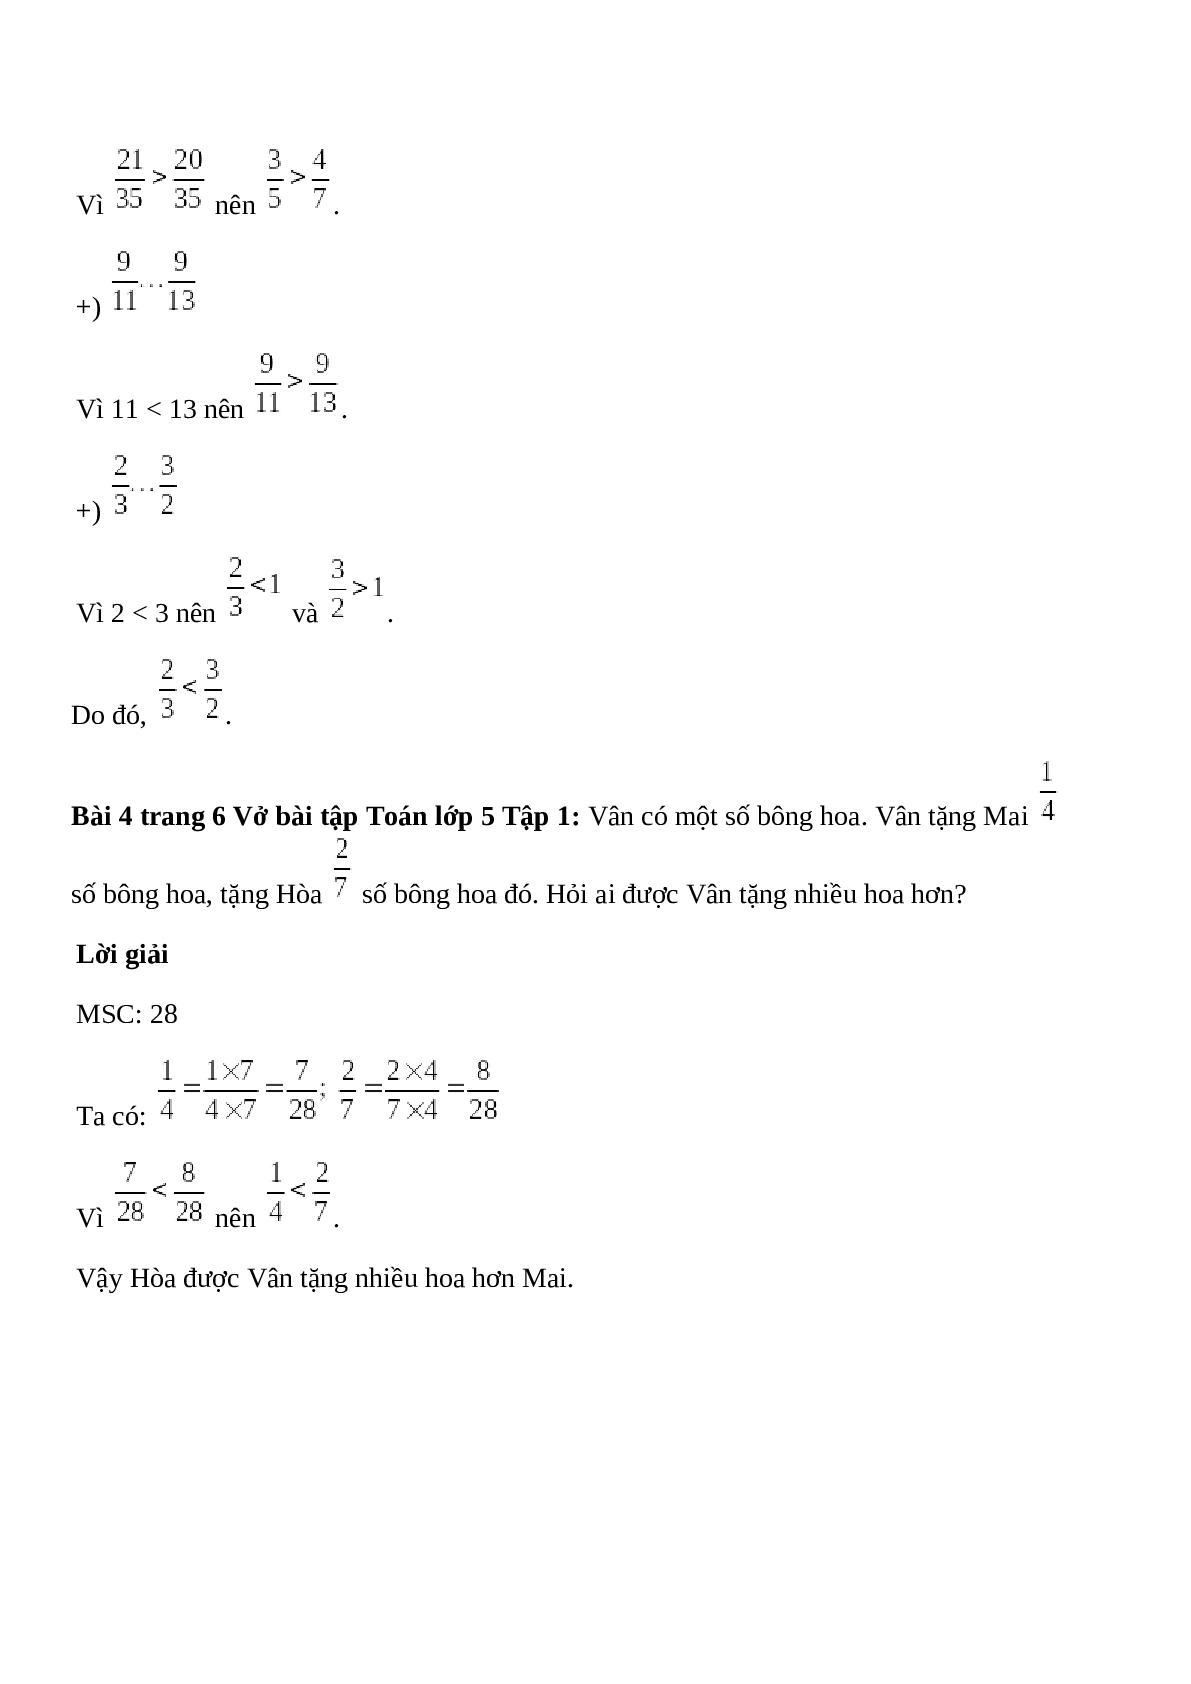 Vở bài tập Toán lớp 5 Tập 1 trang 6 Bài 4: Ôn tập: So sánh hai phân số (tiếp theo) (trang 3)